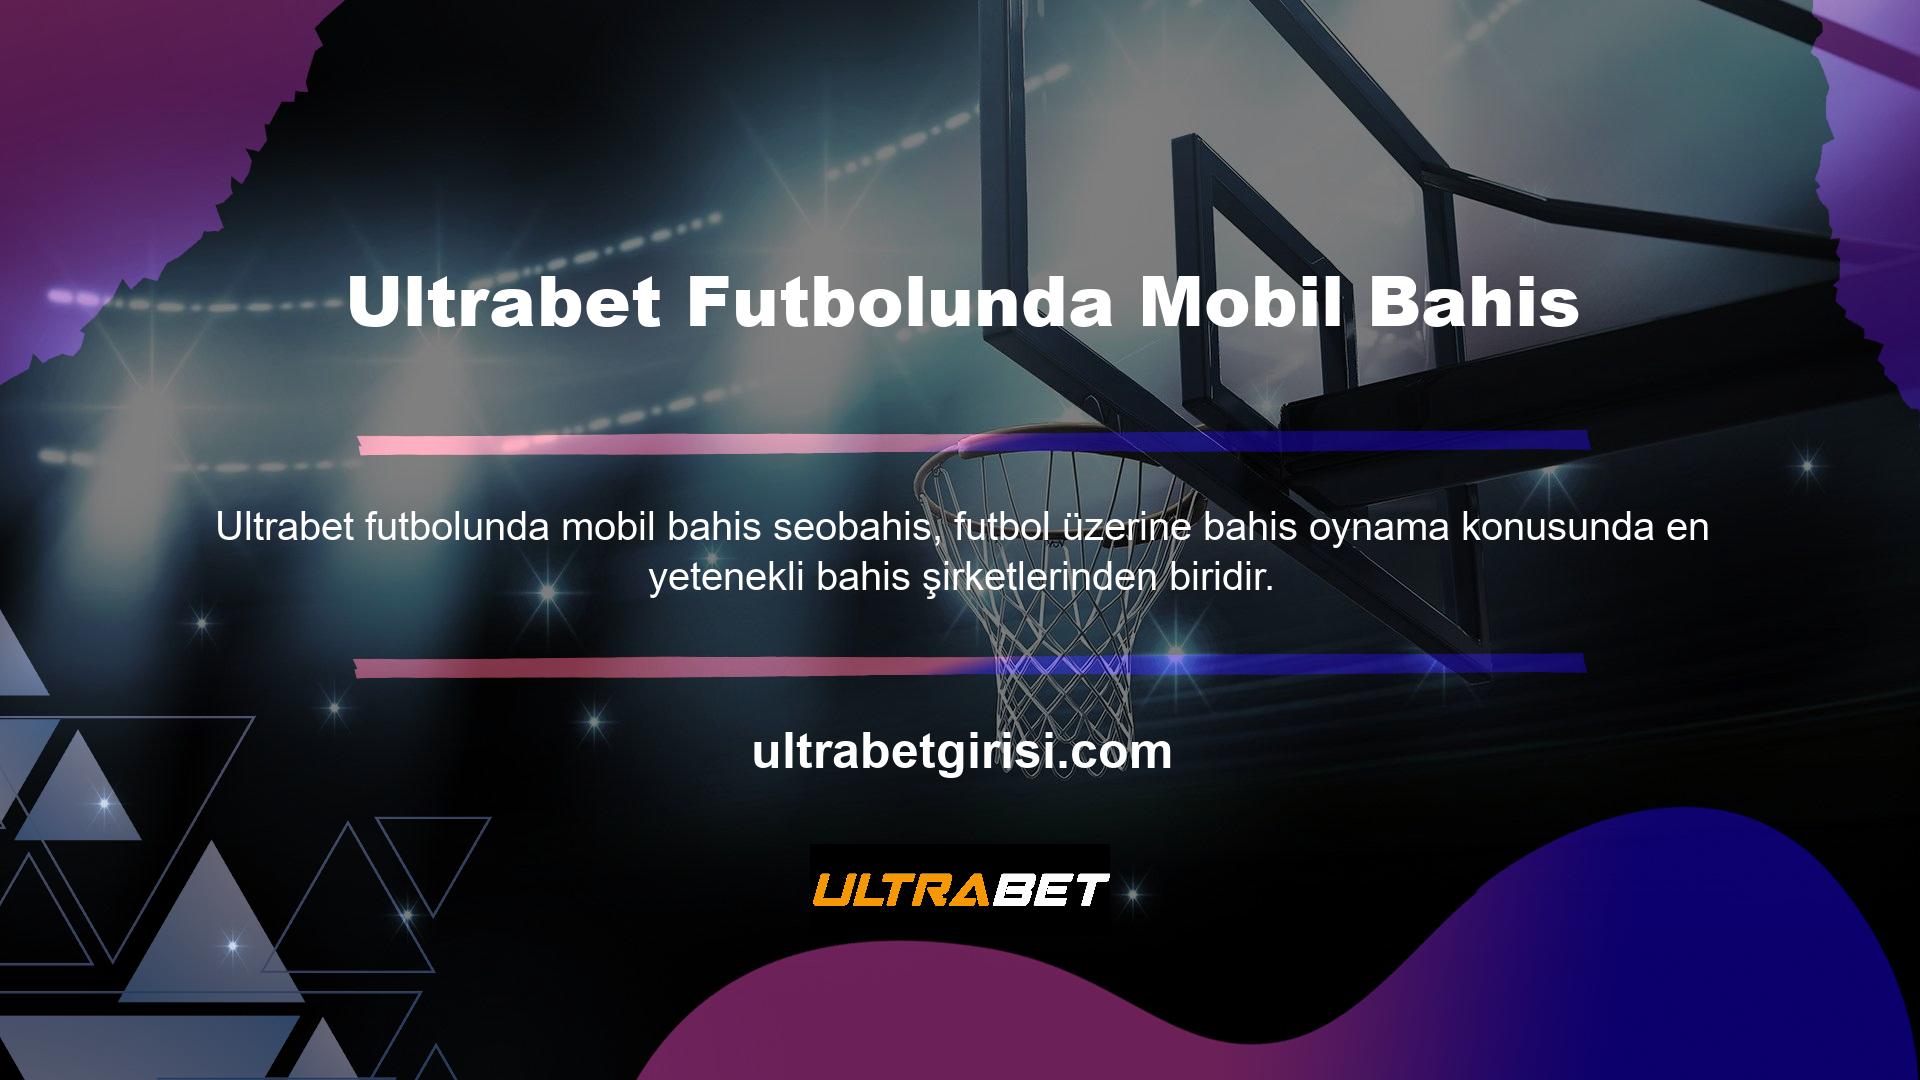 Canlı bir Ultrabet futbol bahis sitesi, şartlı üyelerine hem bilgisayar hem de mobil versiyonlarda sınırsız alternatif bahis seçeneği sunabilmektedir